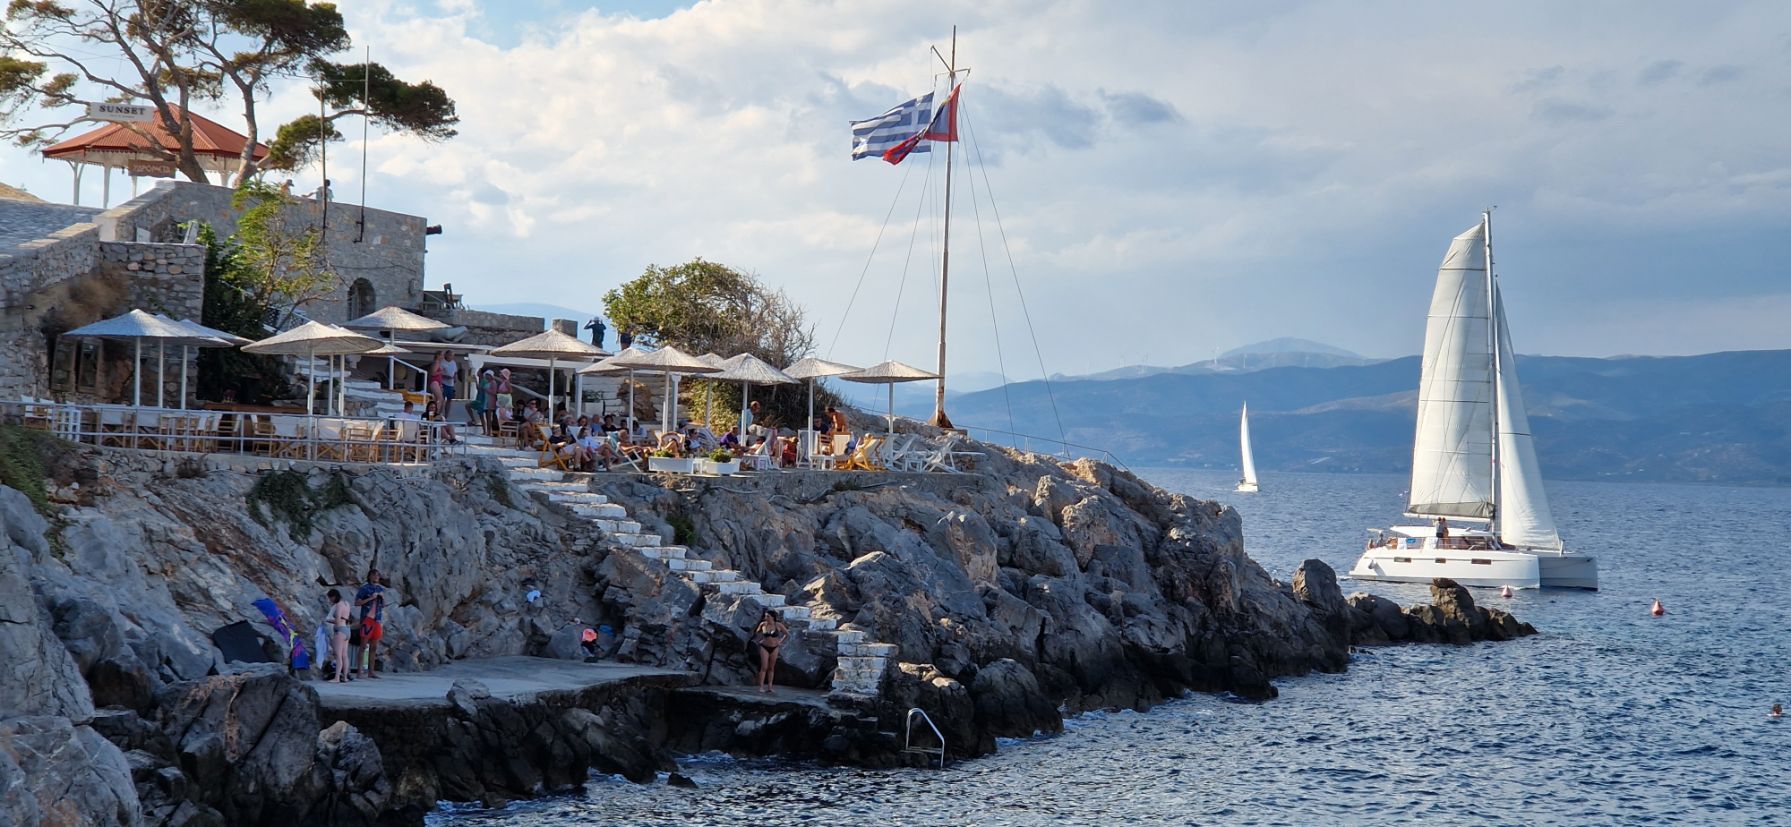 Ein Restaurant am Meer auf einem Felsvorsprung mit einer wehenden kroatischen Flagge. Menschen speisen im Freien, während in der Nähe ein Segelboot unter leicht bewölktem Himmel auf dem glitzernden Meer zu einem Segelurlaub aufbricht.